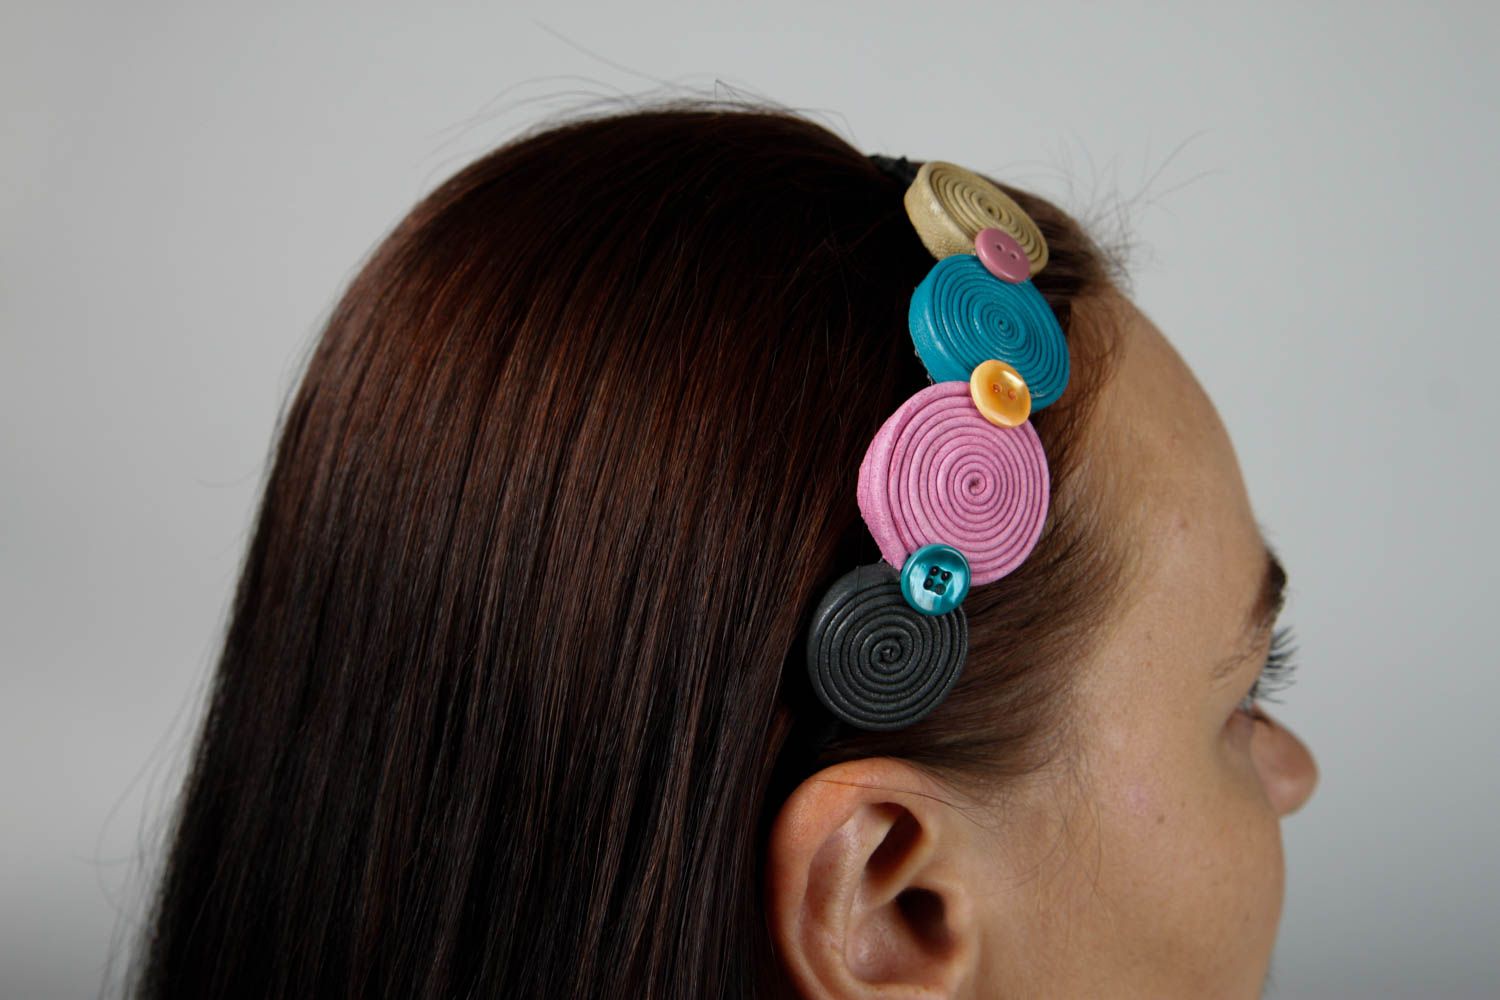 Аксессуар для волос ручной работы оригинальный обруч на голову женский аксессуар фото 2